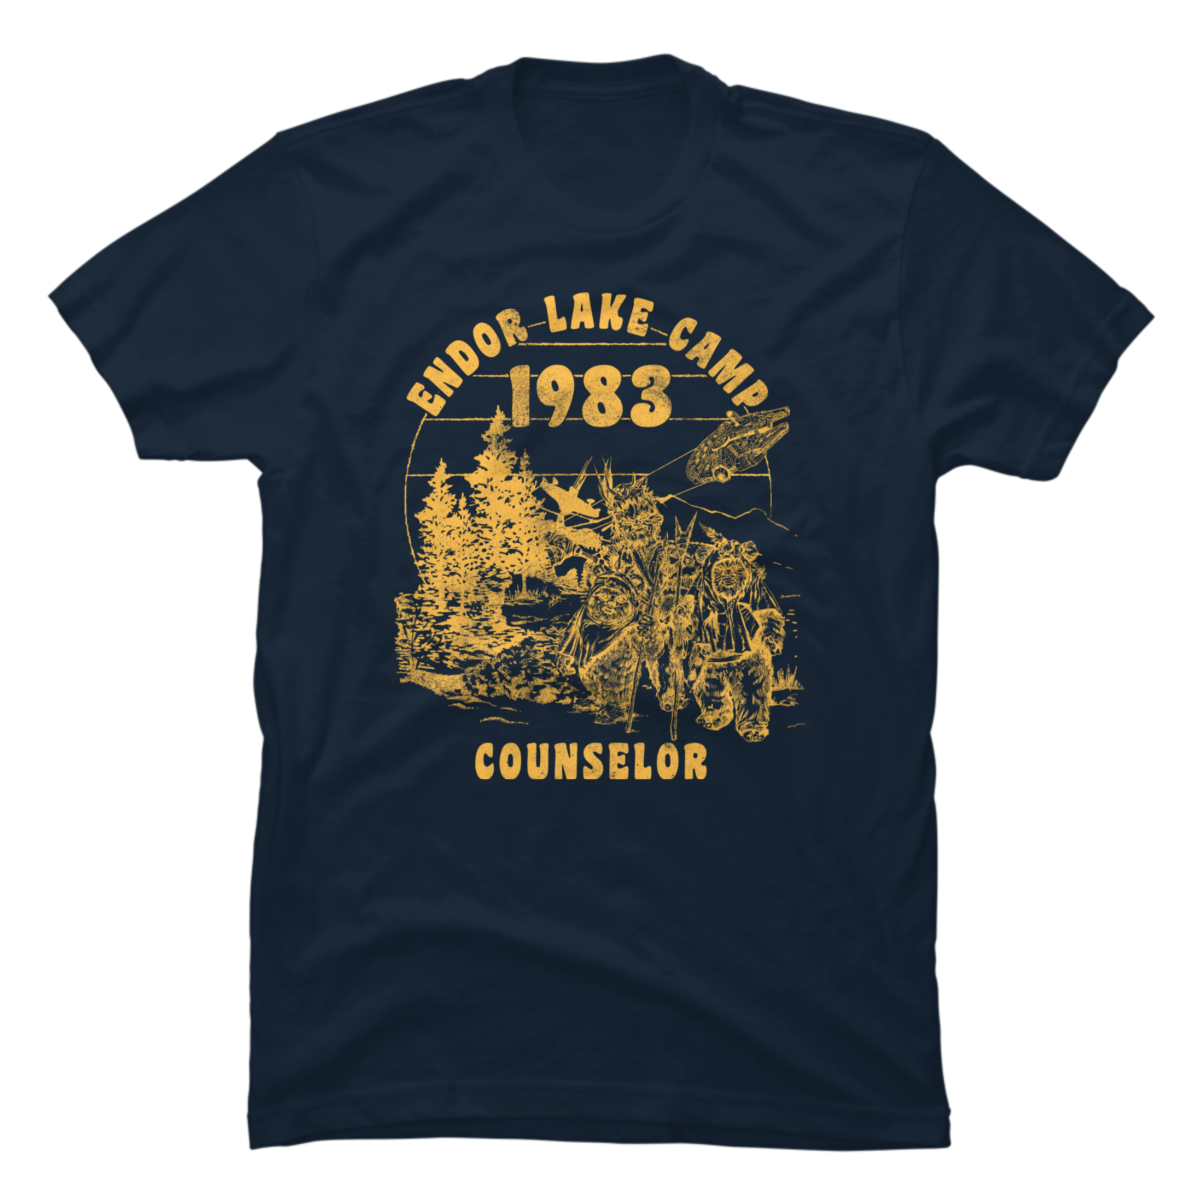 camp counselor shirt